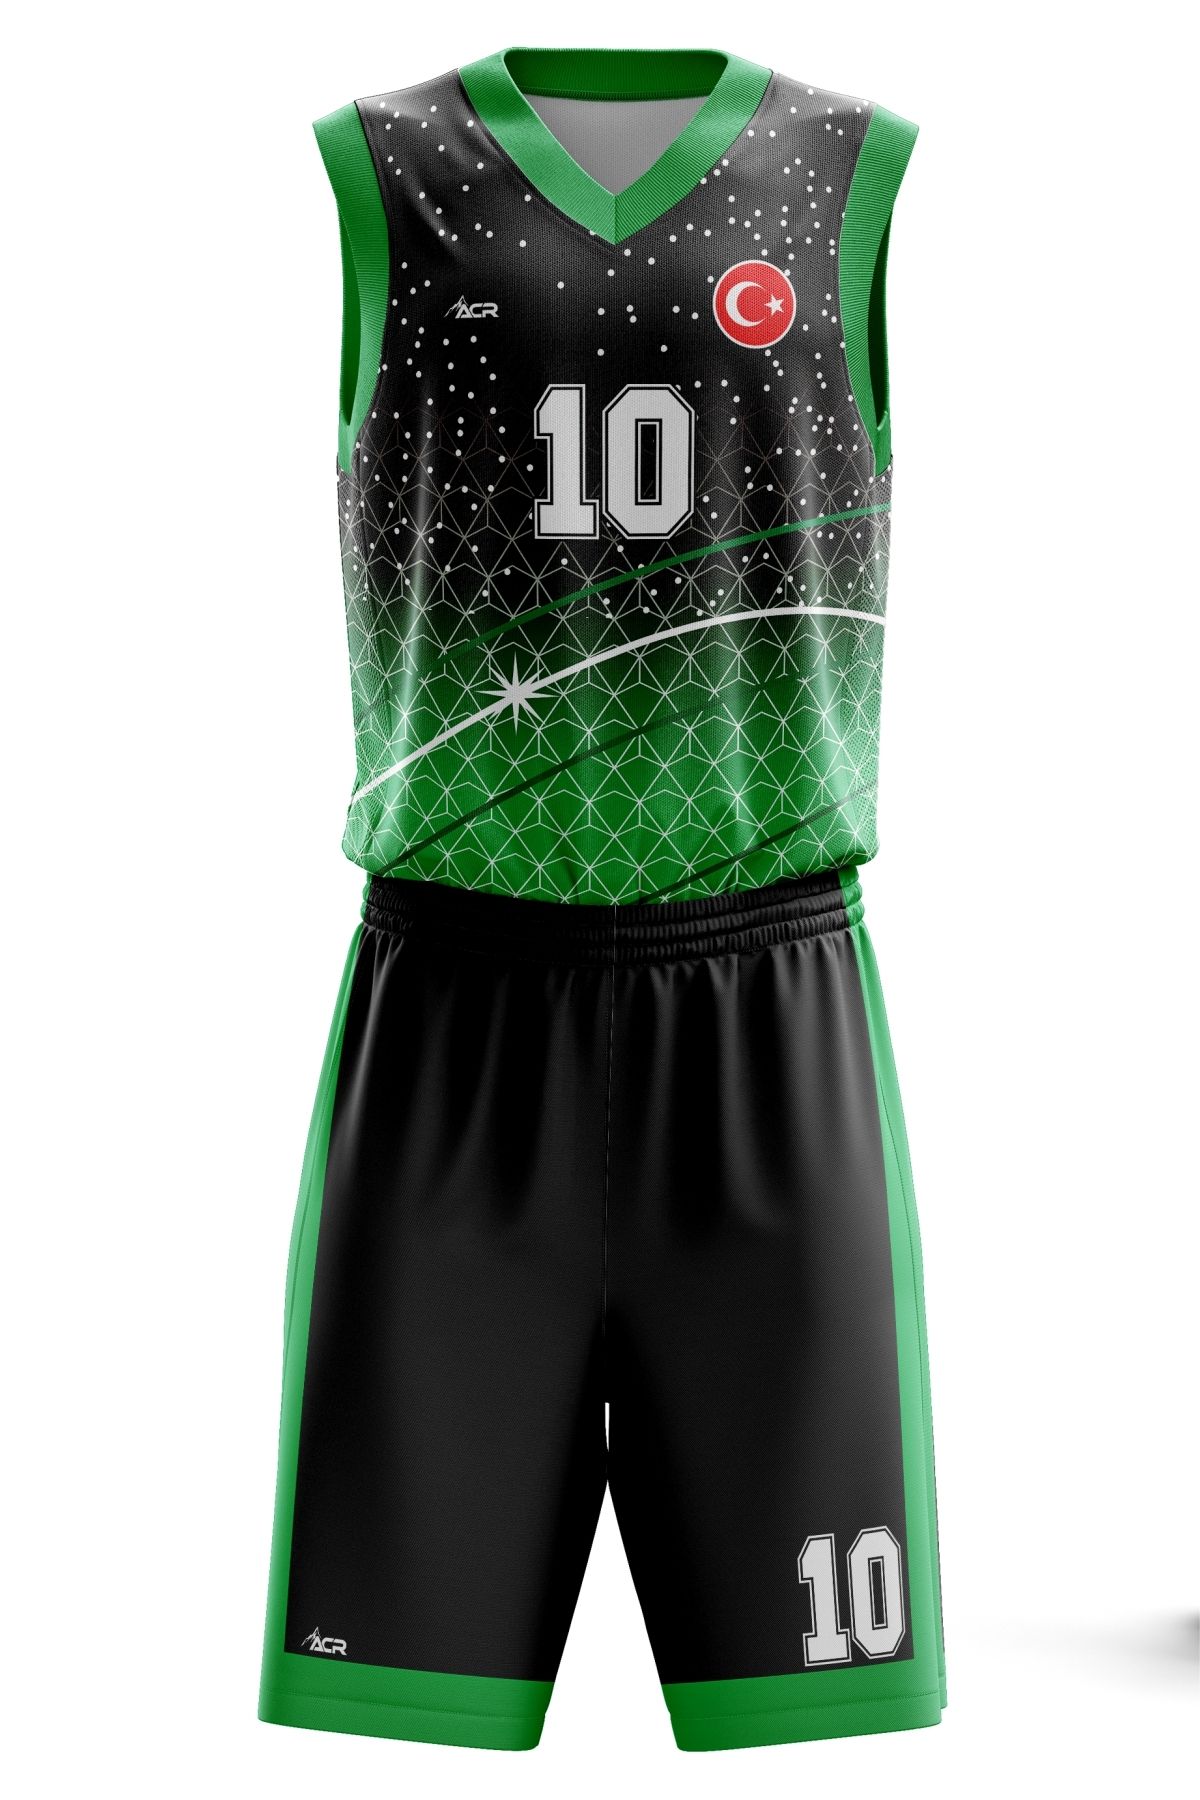 ACR Giyim Tekstil Forma Baskı Basketbol Forması  Kişiye Özel Basketbol Forması Alt Üst Takım Hediyelik Forma B2402 Yeşil Siyah